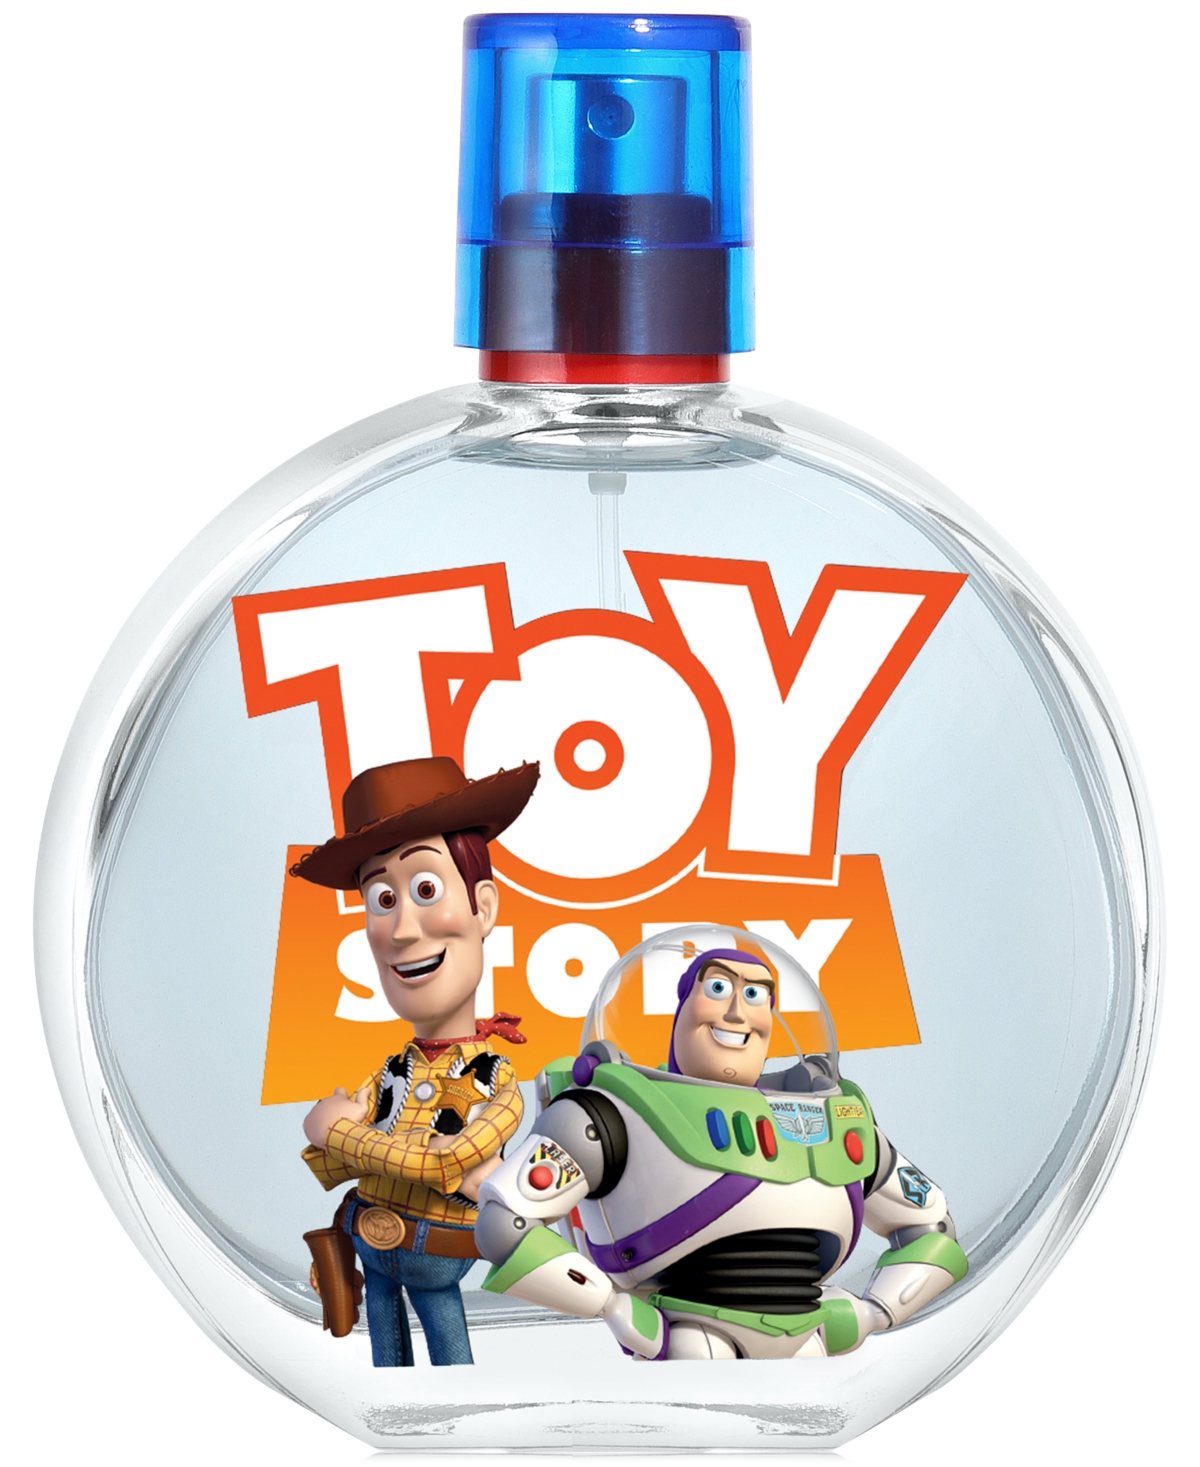 Toy Story Eau de Toilette Spray, 3.4 oz.